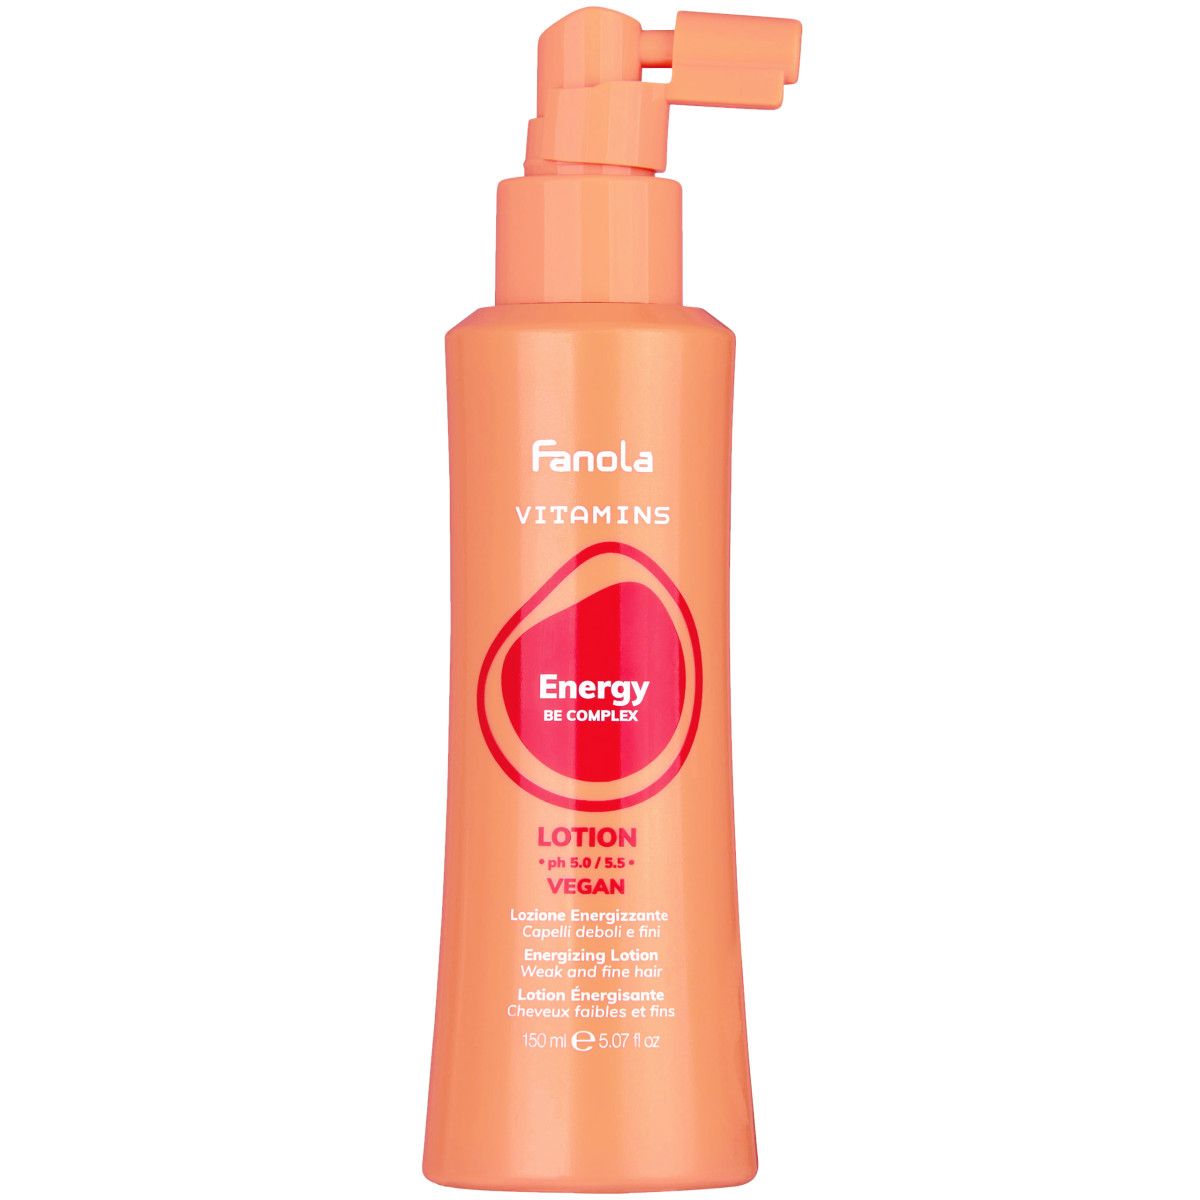 Fanola Vitamins Energy Lotion - energetyzujący lotion do włosów słabych i wypadających, 150ml